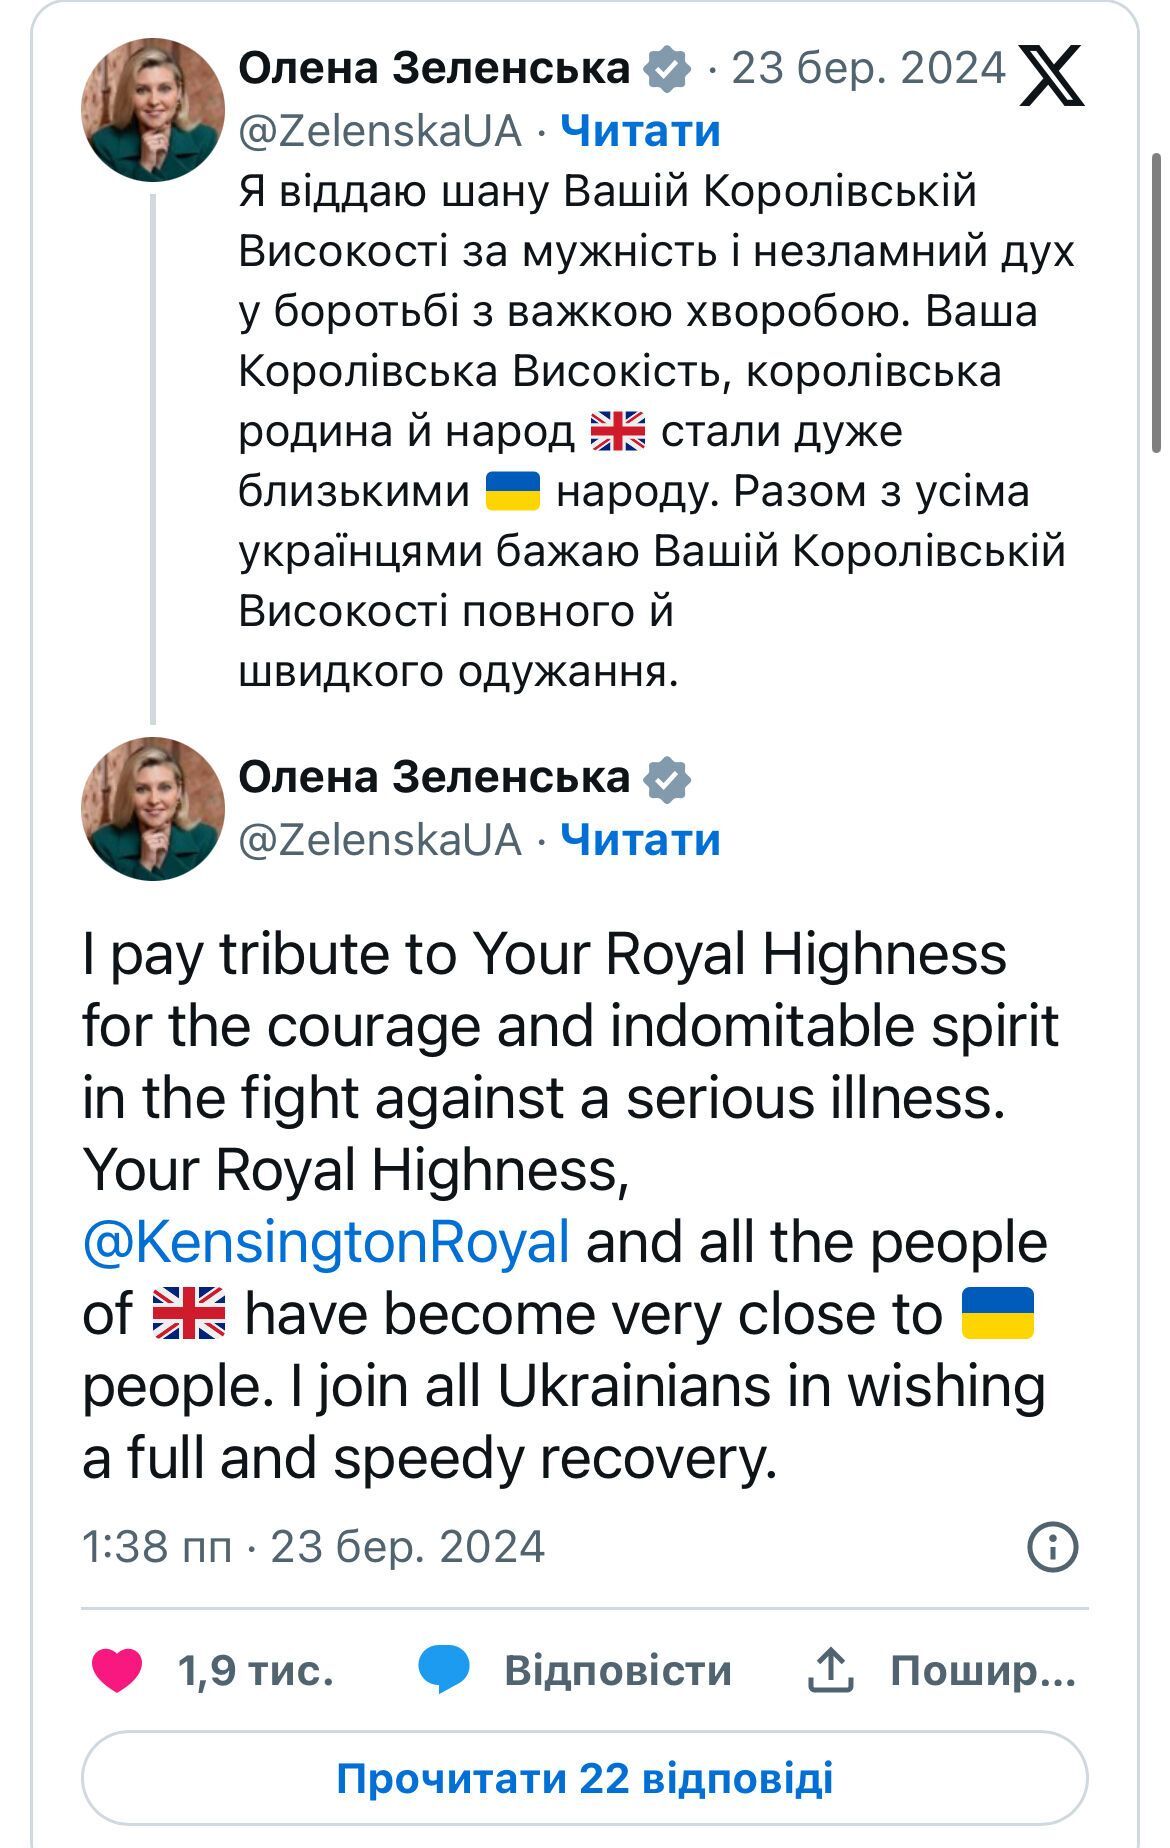  Зеленська висловила свою підтримку Міддлтон після поширення новин про її серйозну хворобу